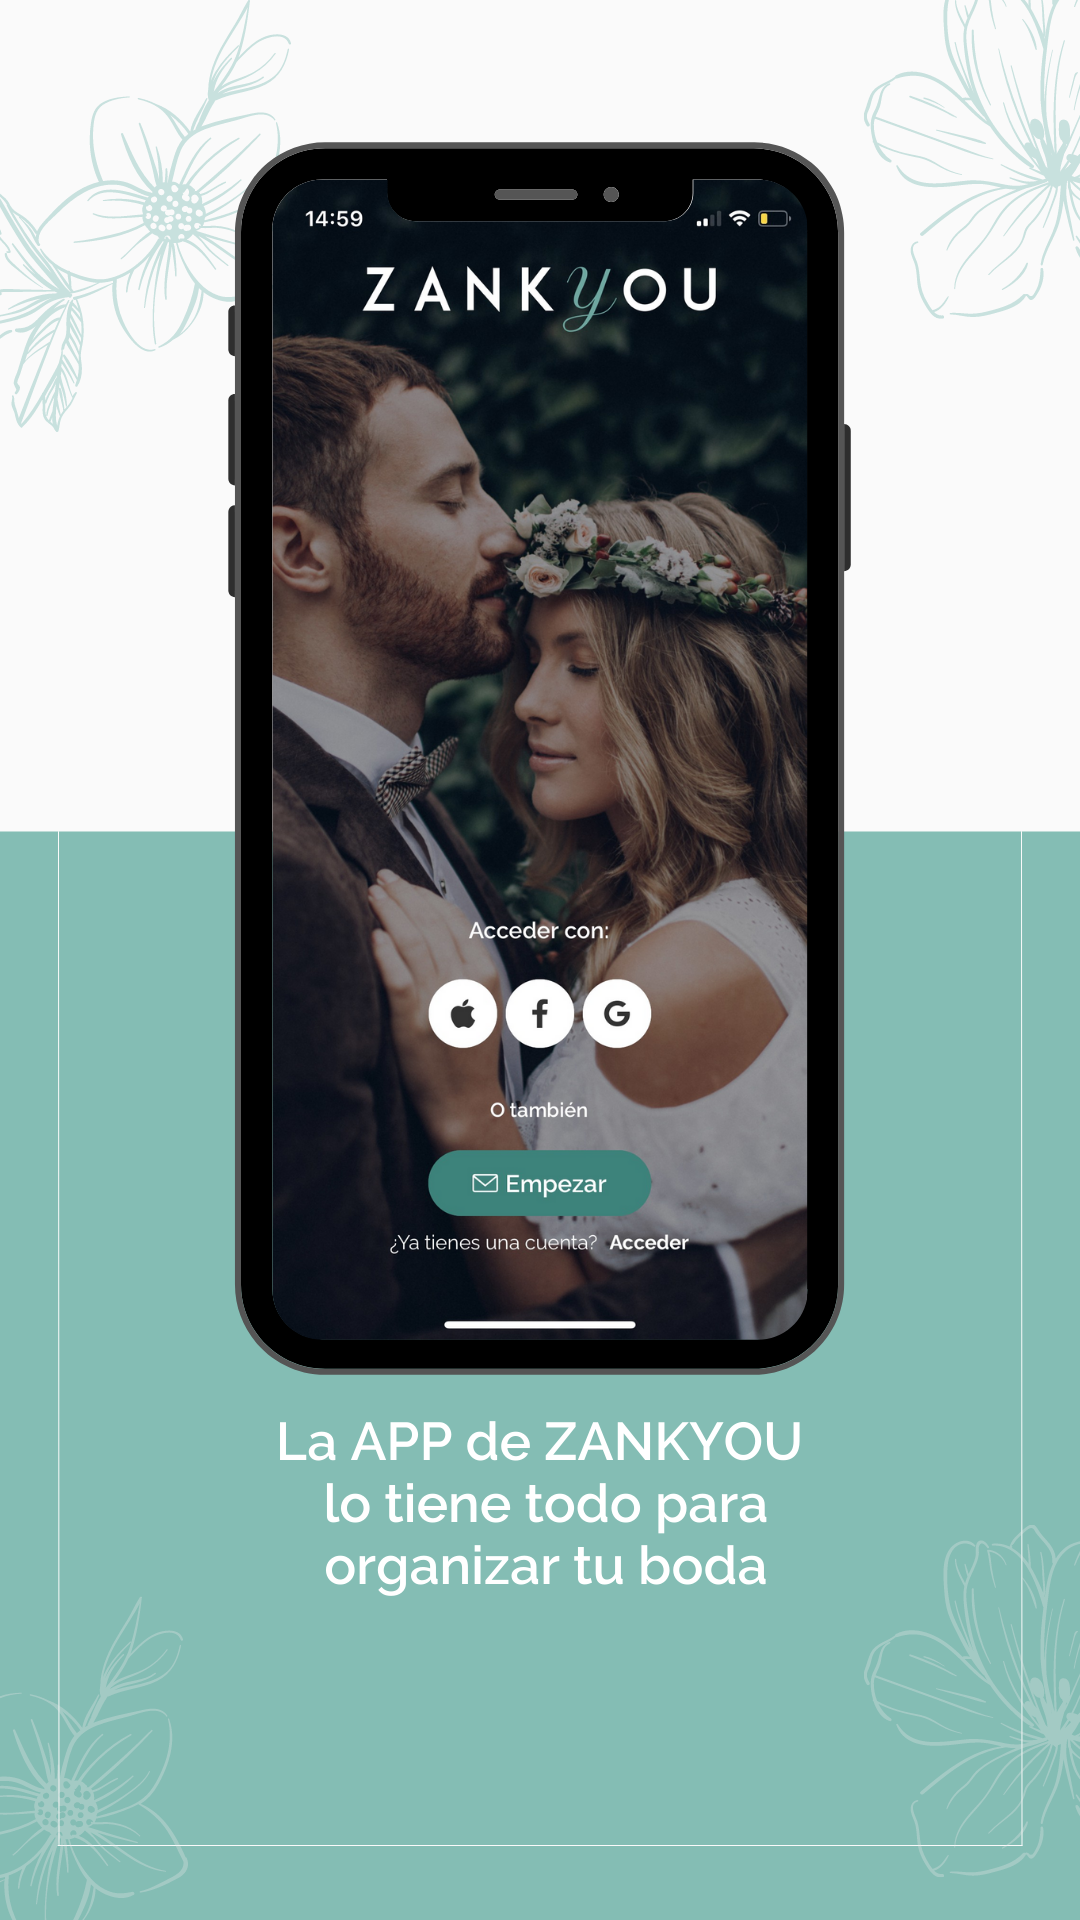 La nueva App para organizar tu boda